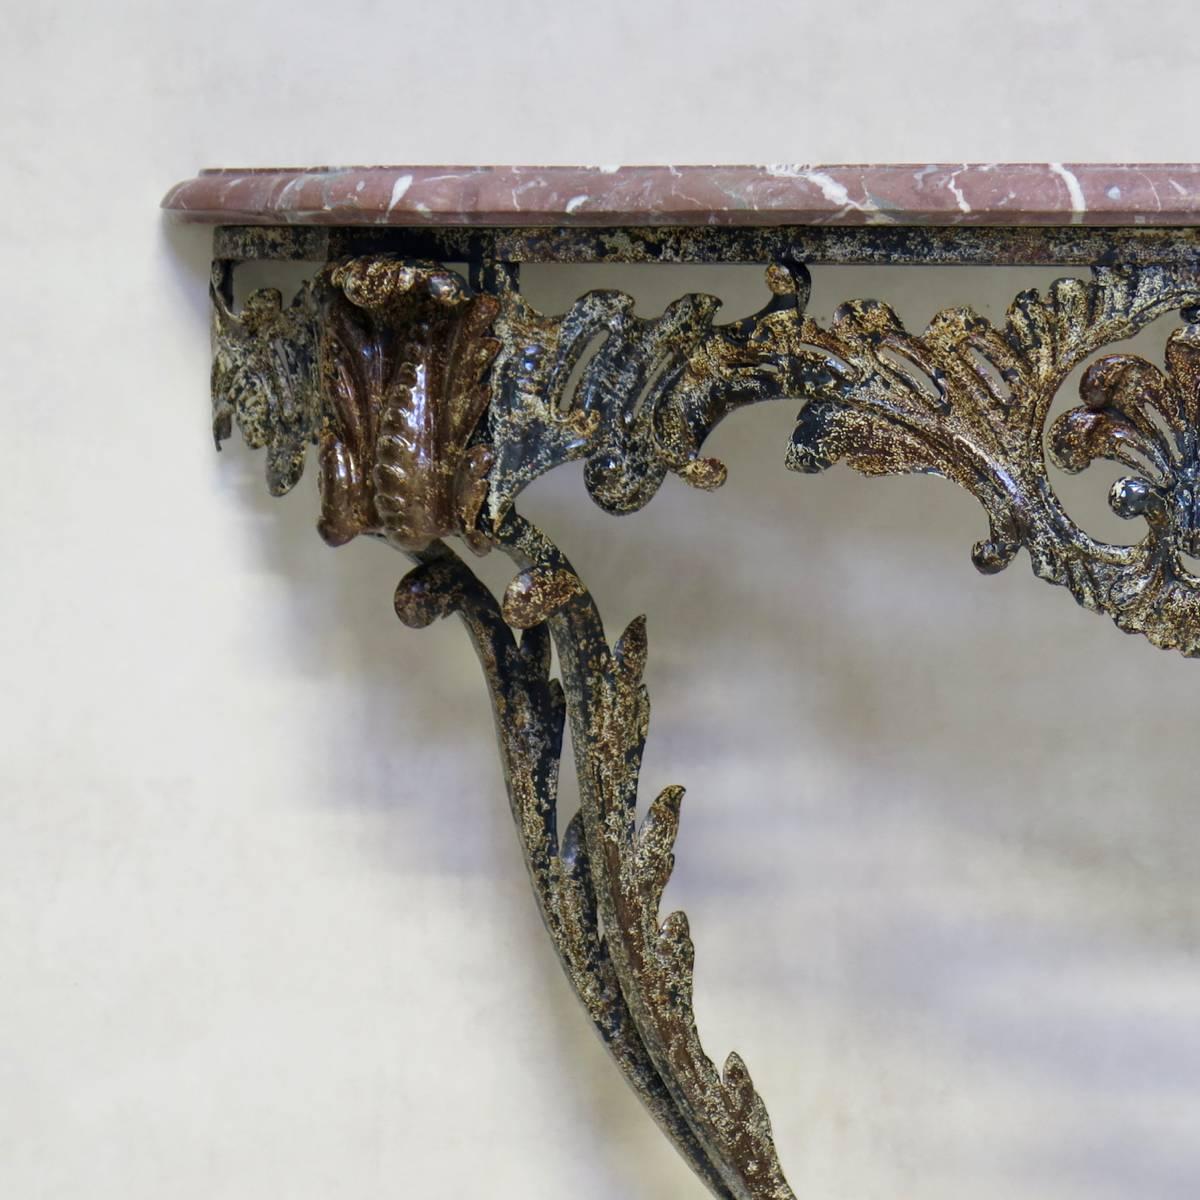 Jolie console démilune à base de fer forgé de style Rocaille, décorée de feuilles d'acanthe et d'un motif de coquille. Le fer a une patine magnifique. Dessus en marbre rose d'origine.